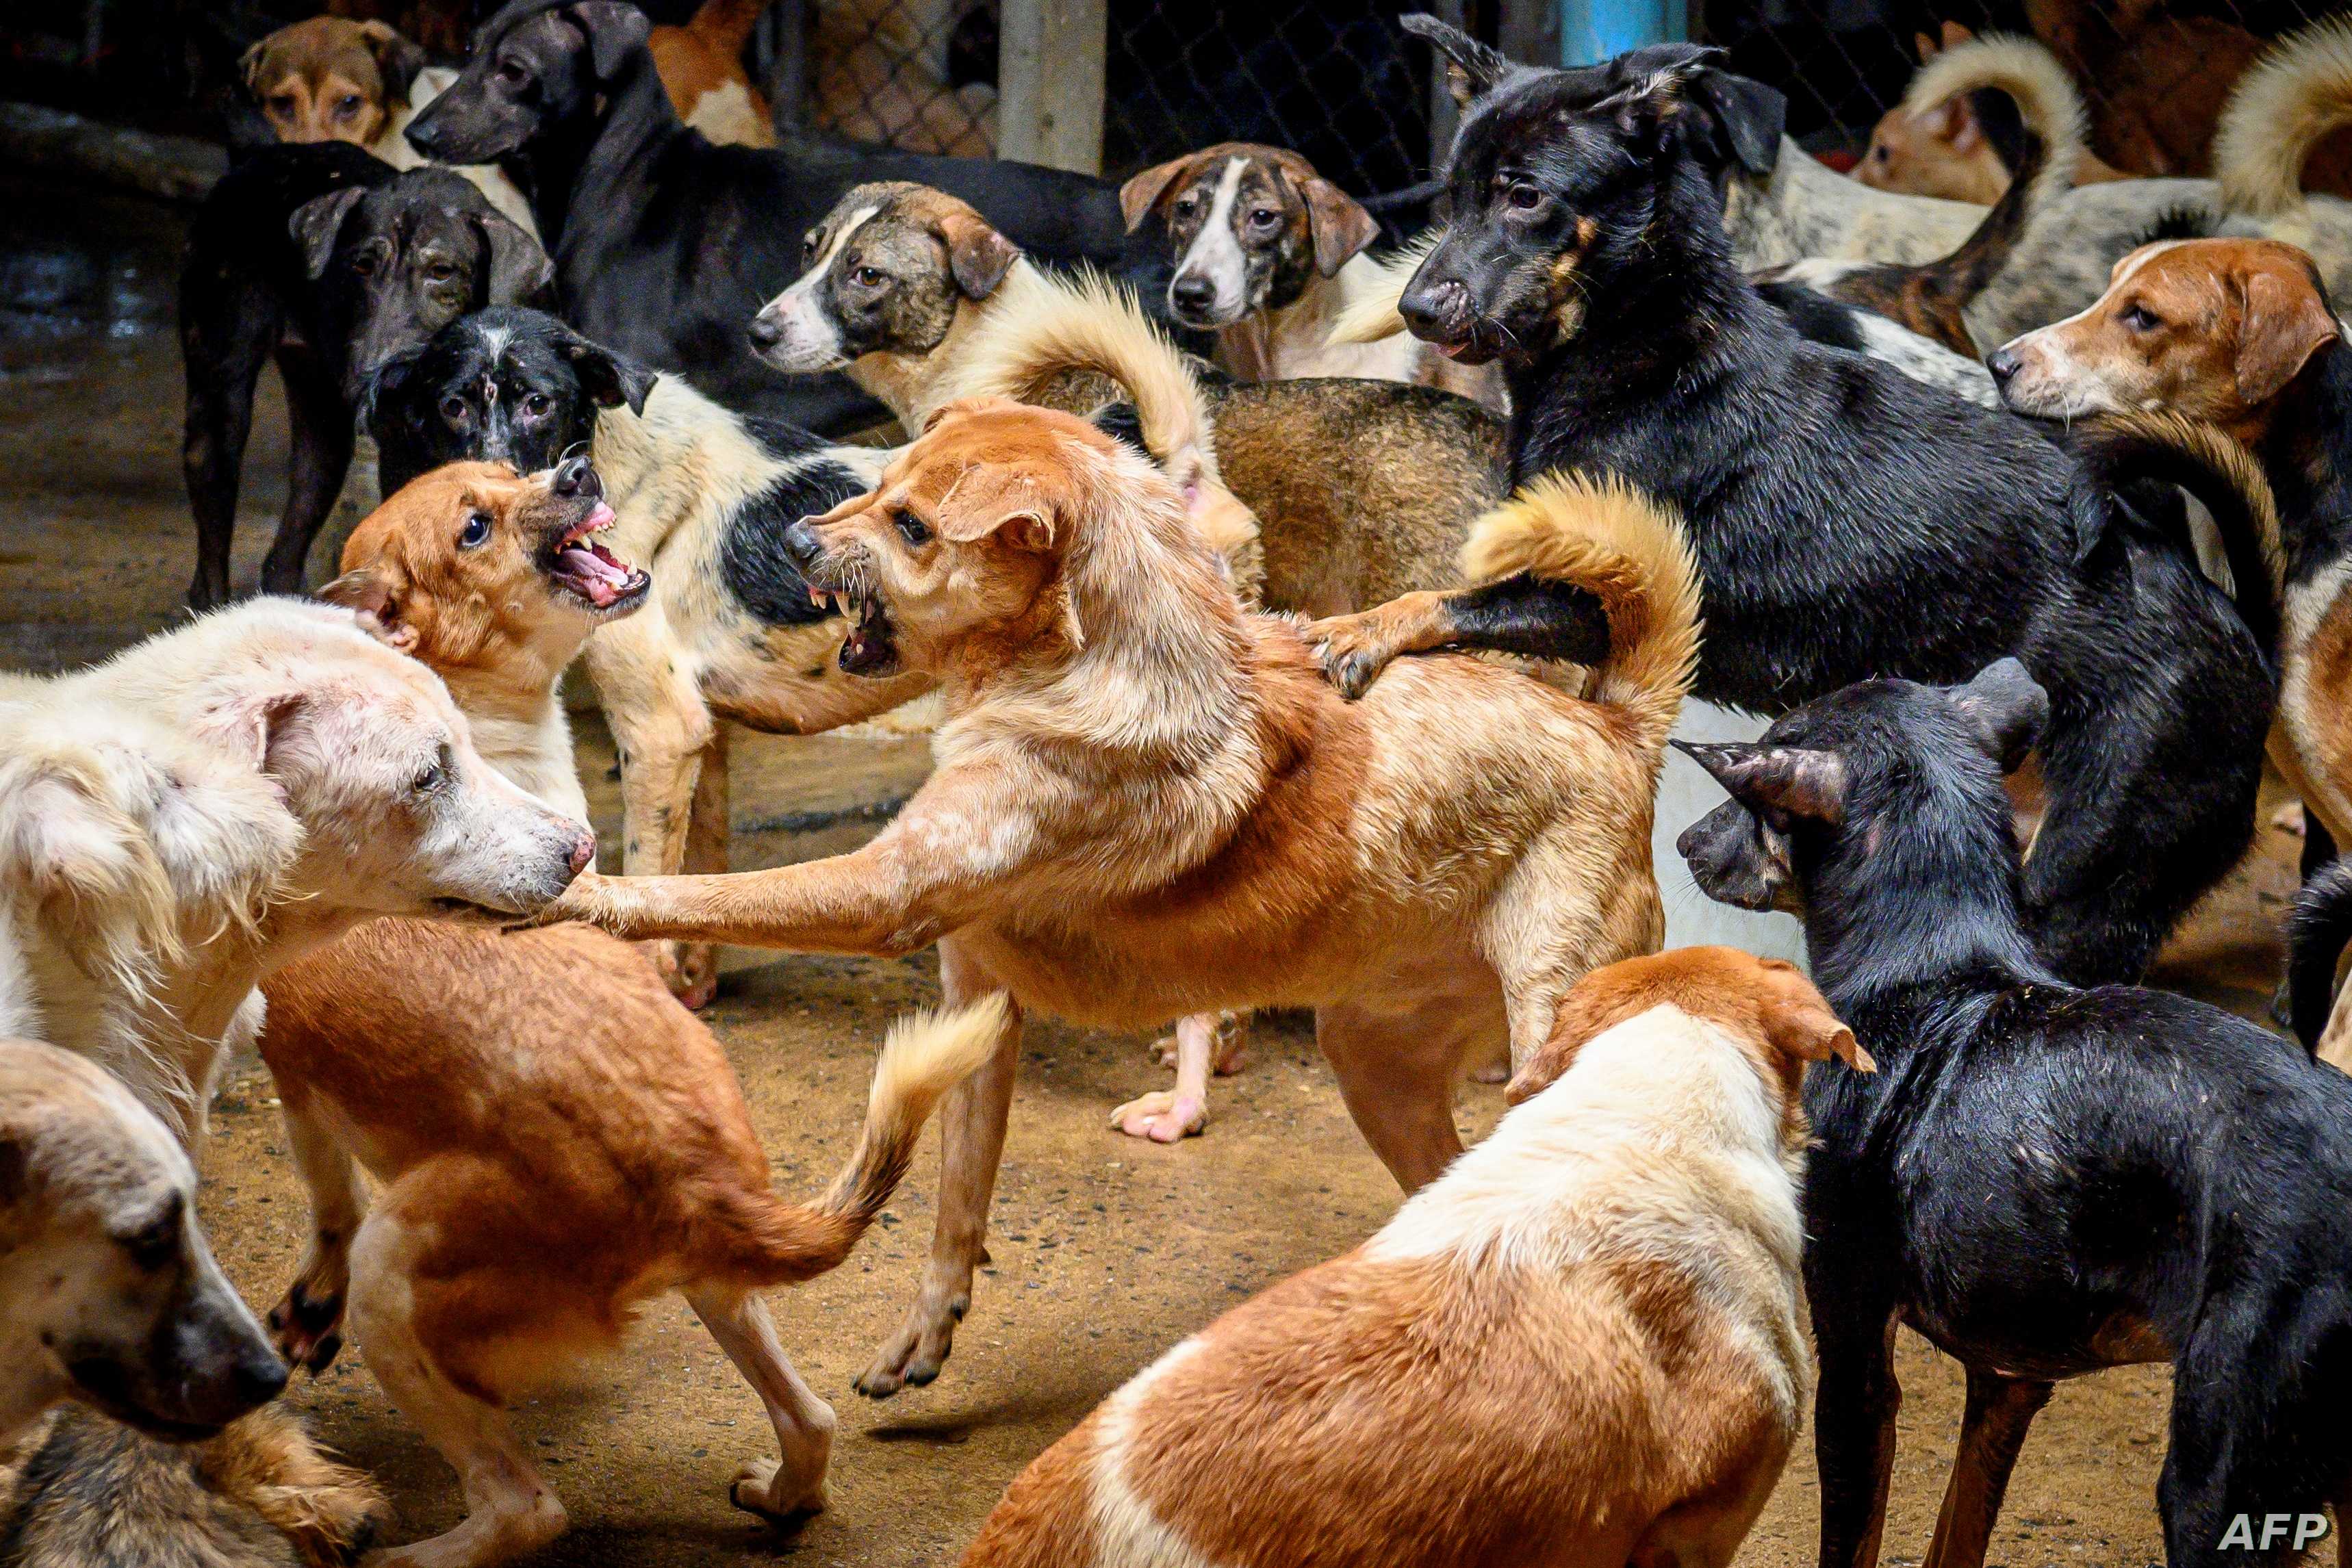 رئيس لجنة الصحة والبيئة النيابية لـ"سرايا": الكلاب الضالة قد تعرض المواطنين للإصابة بـ"داء الكَلَب" الخطير